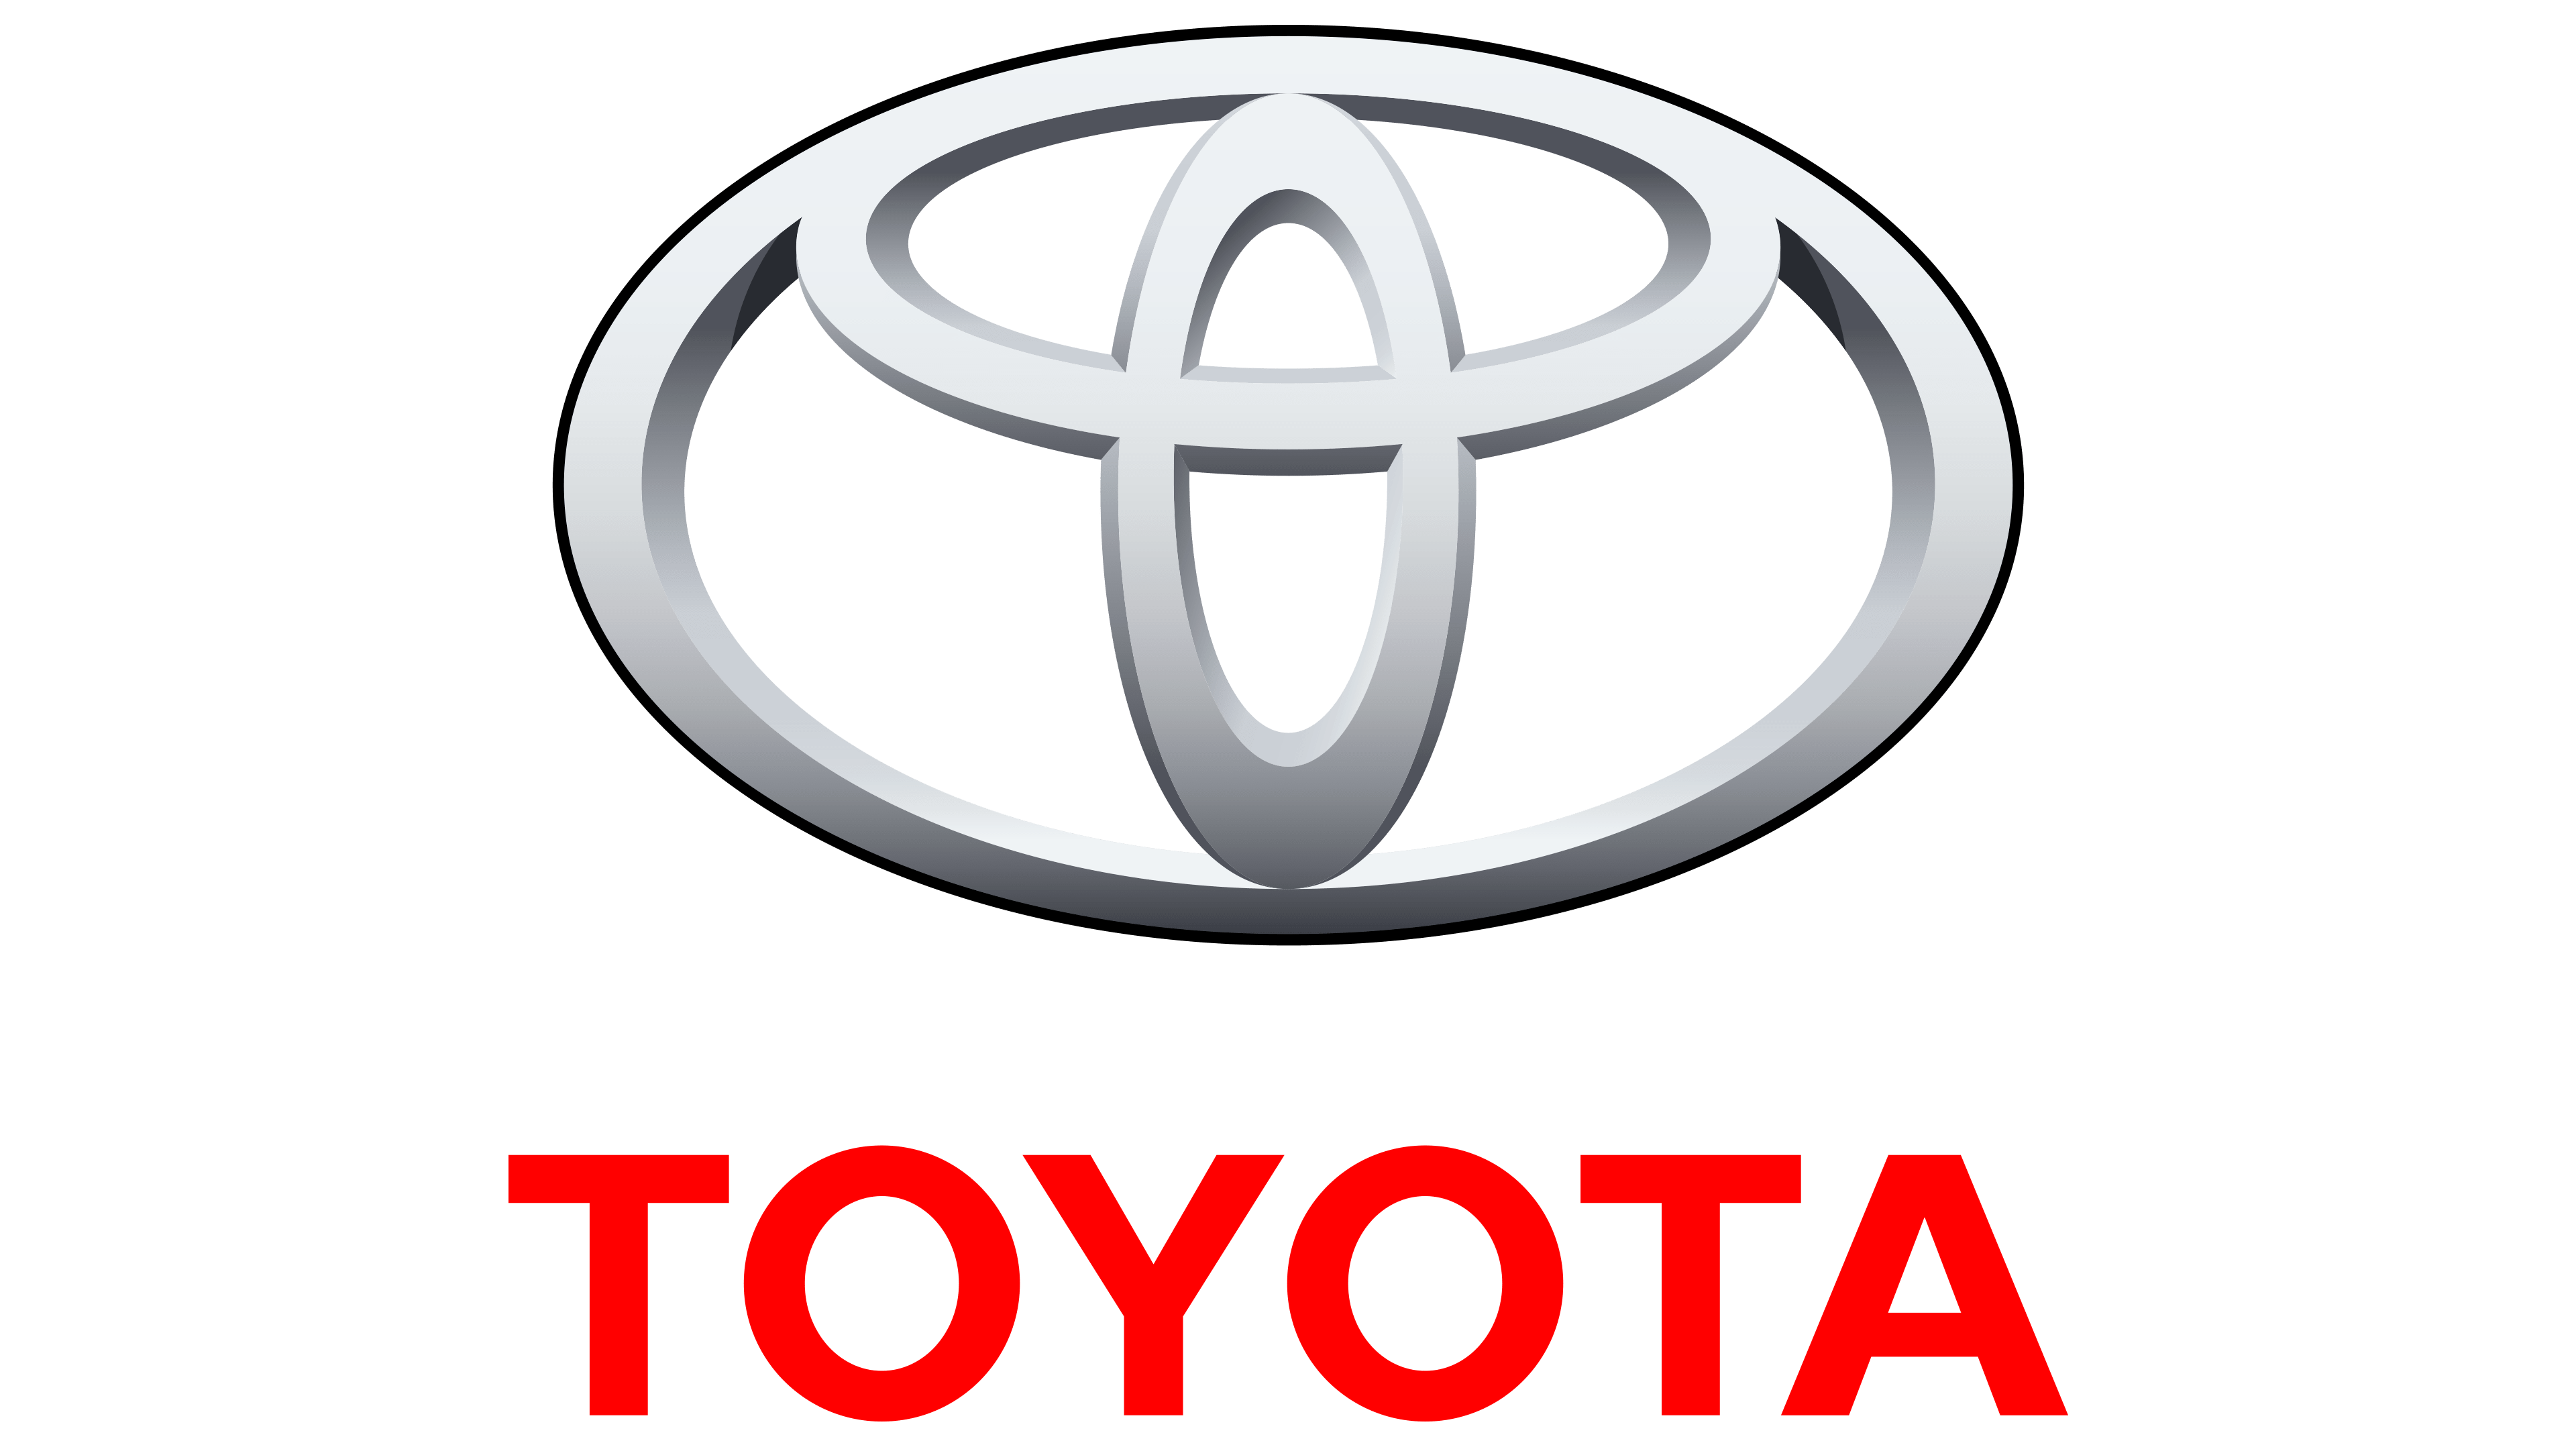 Dàn lạnh Toyota / Giàn lạnh Toyota